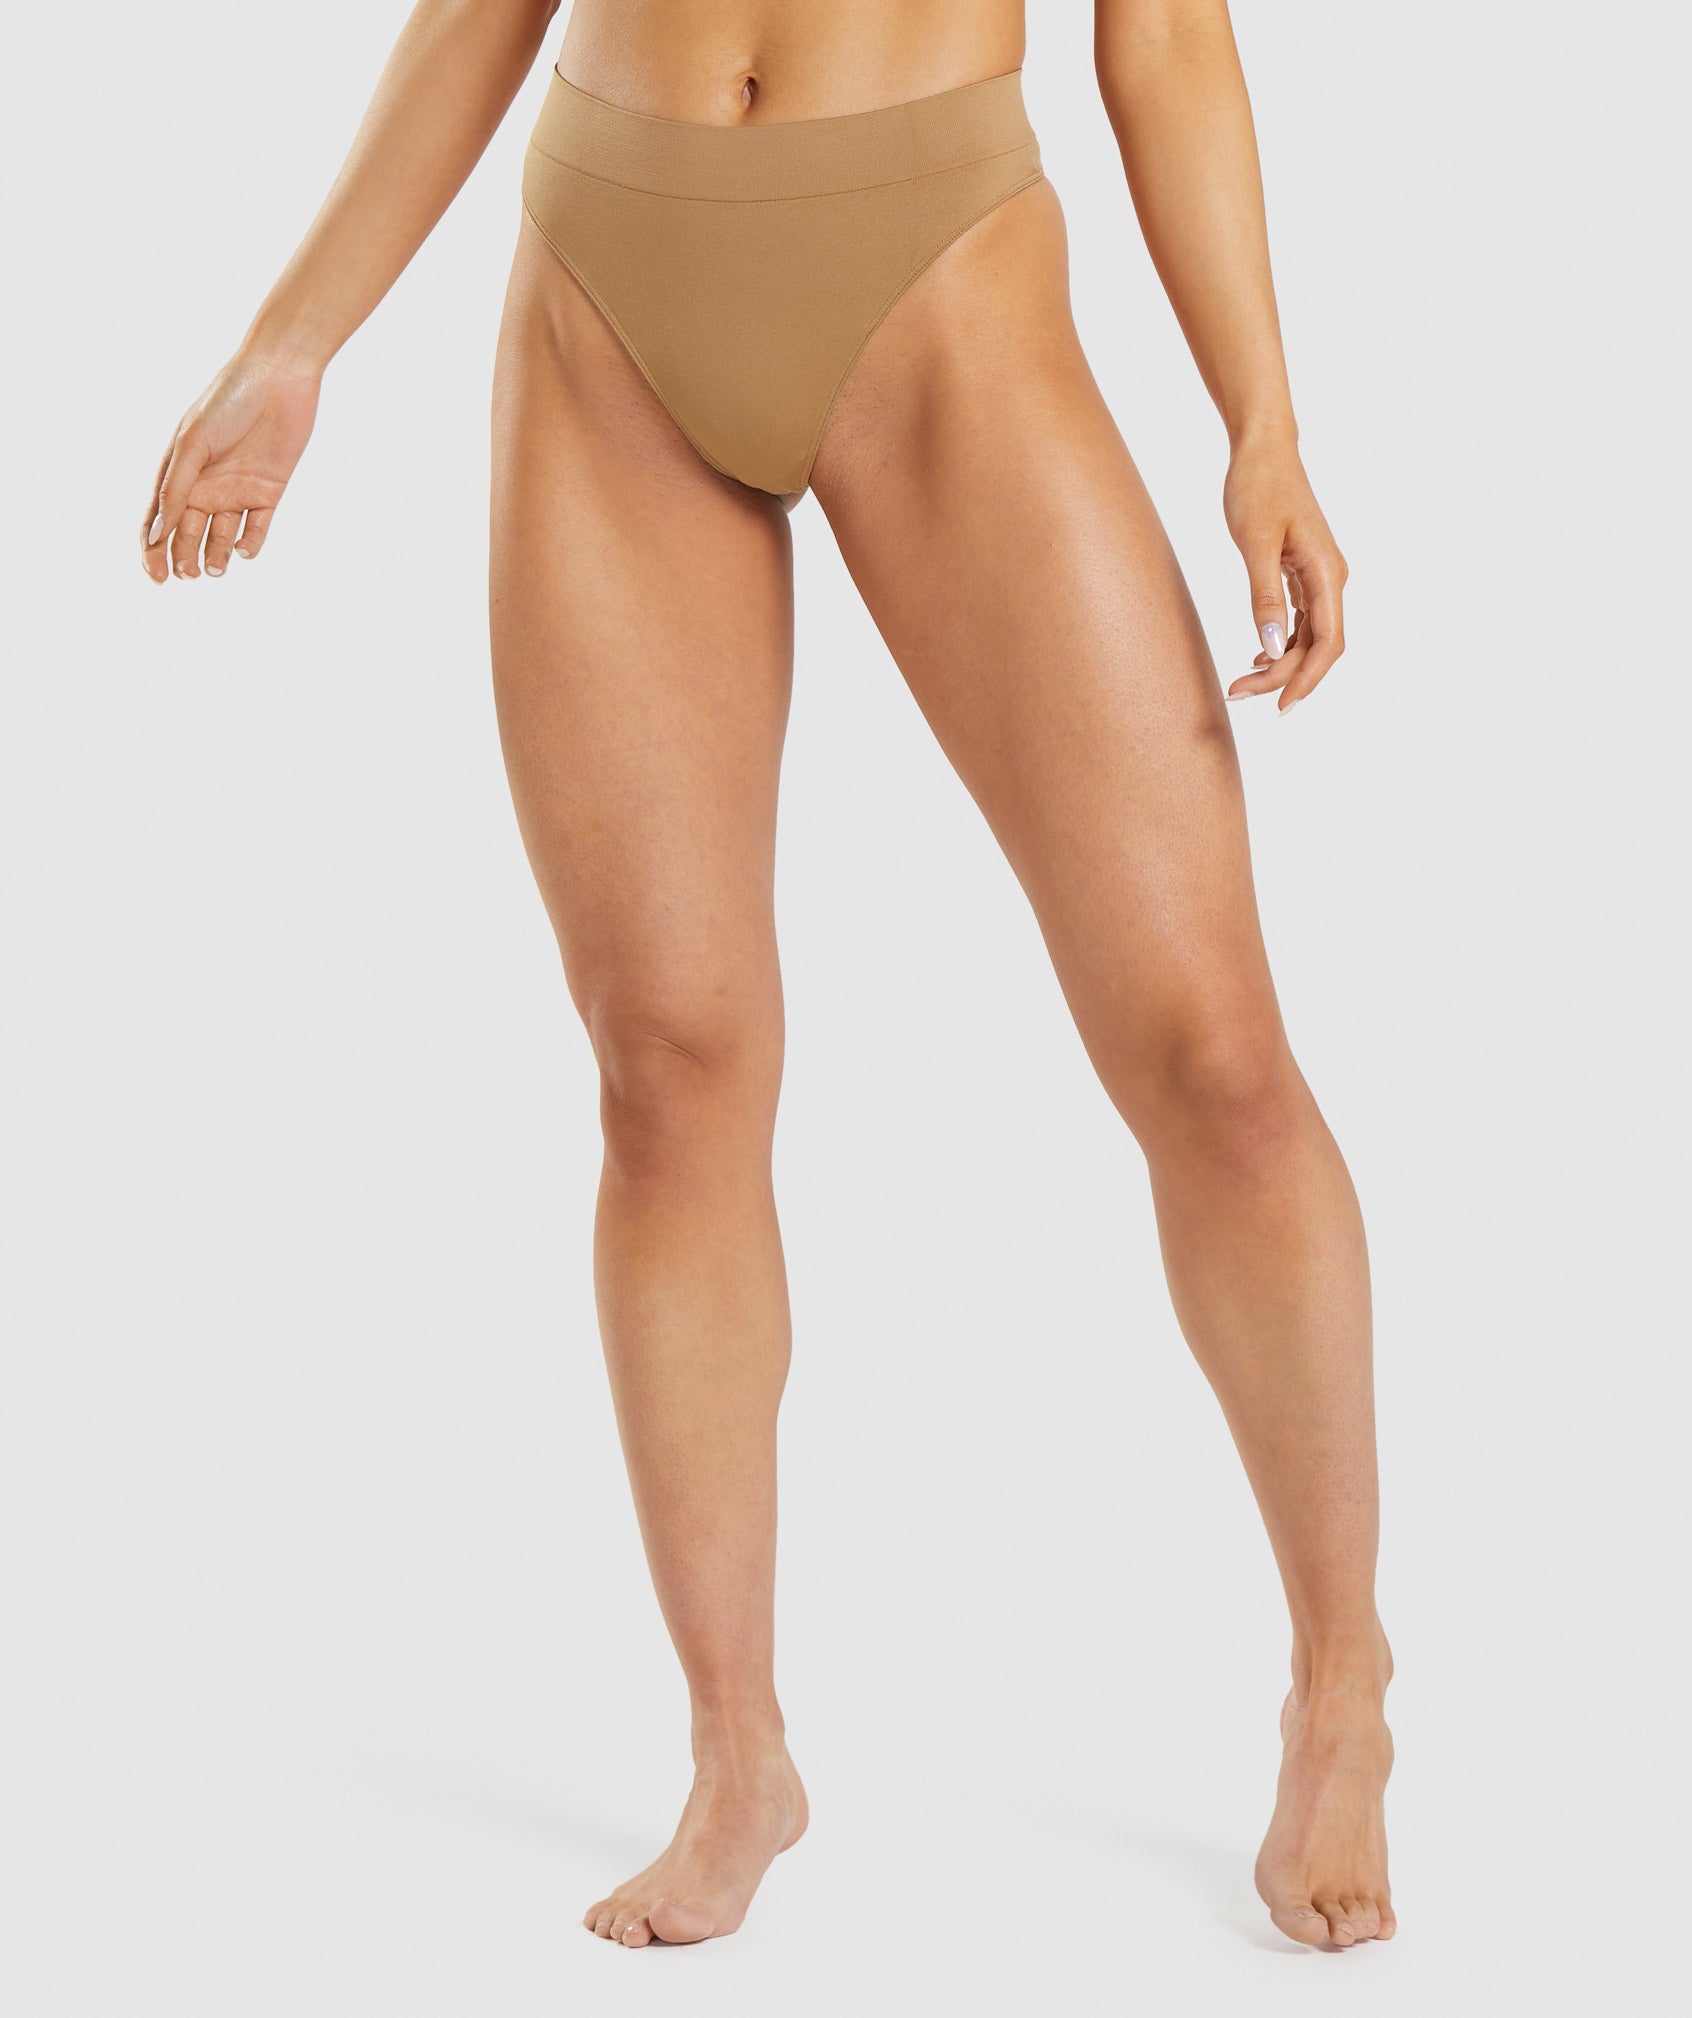 Women's Seamless Underwear - Gym Underwear from Gymshark